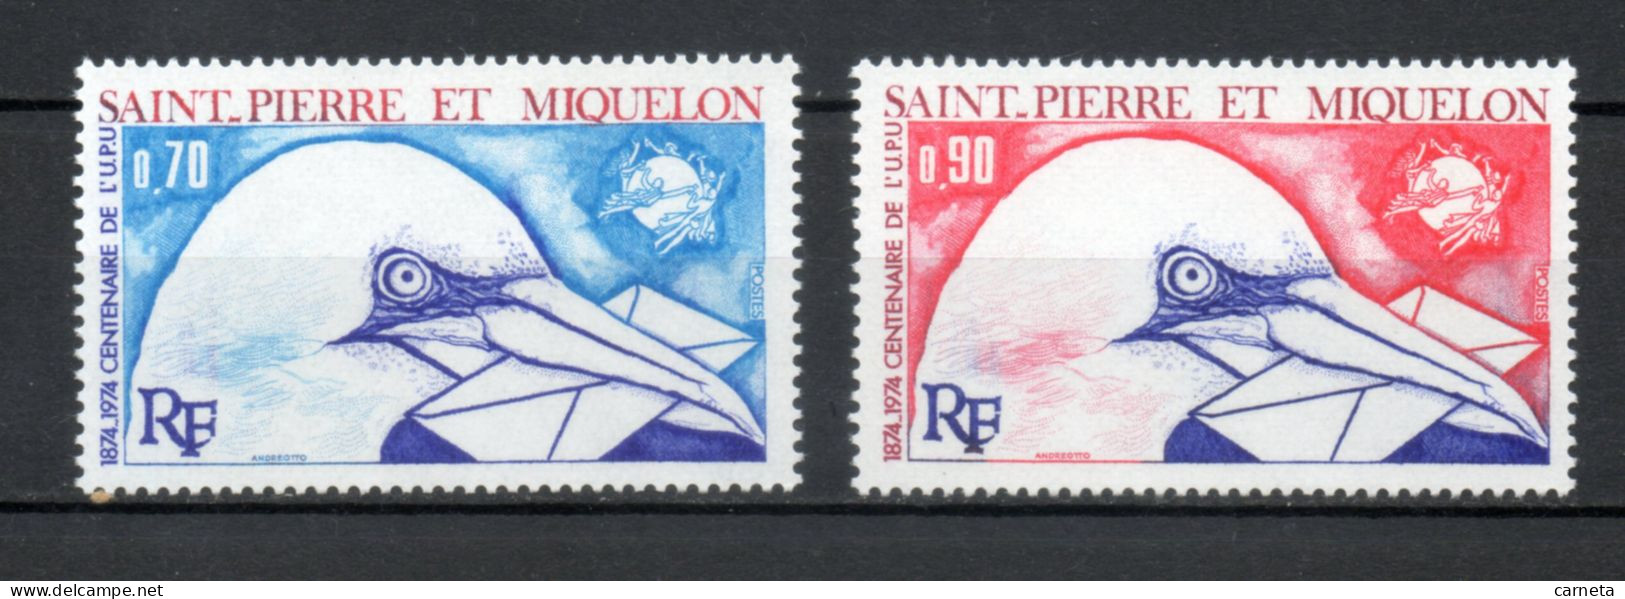 SAINT PIERRE ET MIQUELON N° 434 + 435    NEUFS SANS CHARNIERE COTE  15.00€    OISEAUX ANIMAUX FAUNE UPU - Unused Stamps